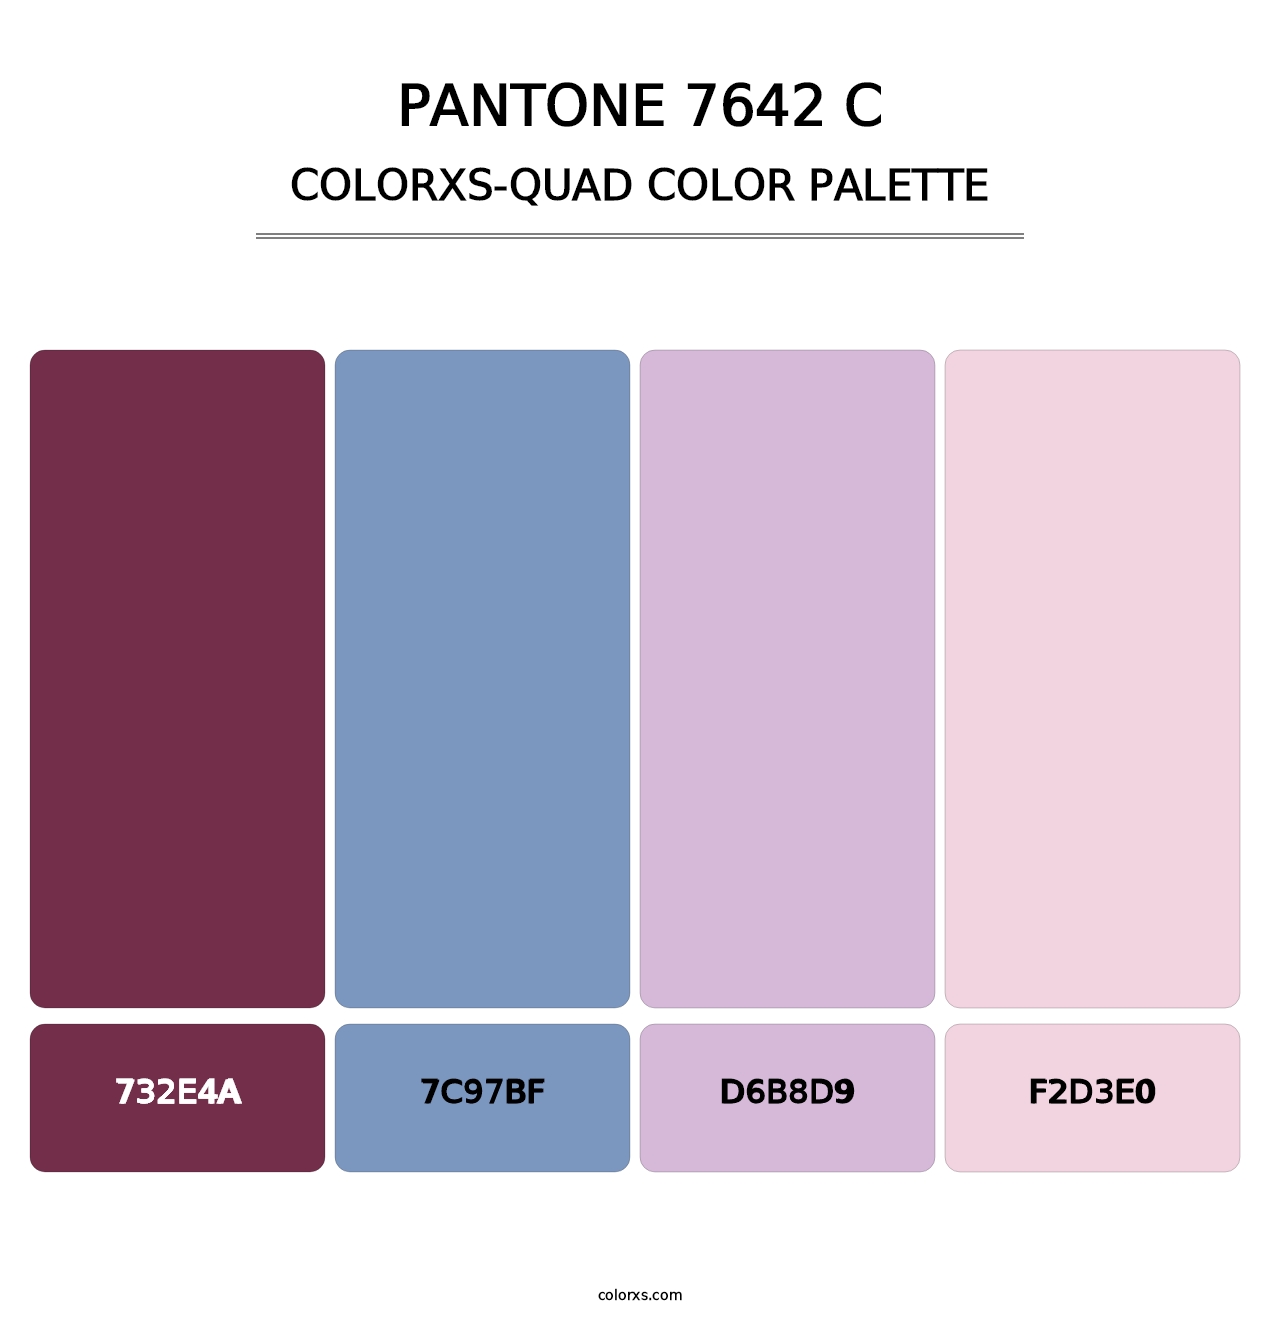 PANTONE 7642 C - Colorxs Quad Palette